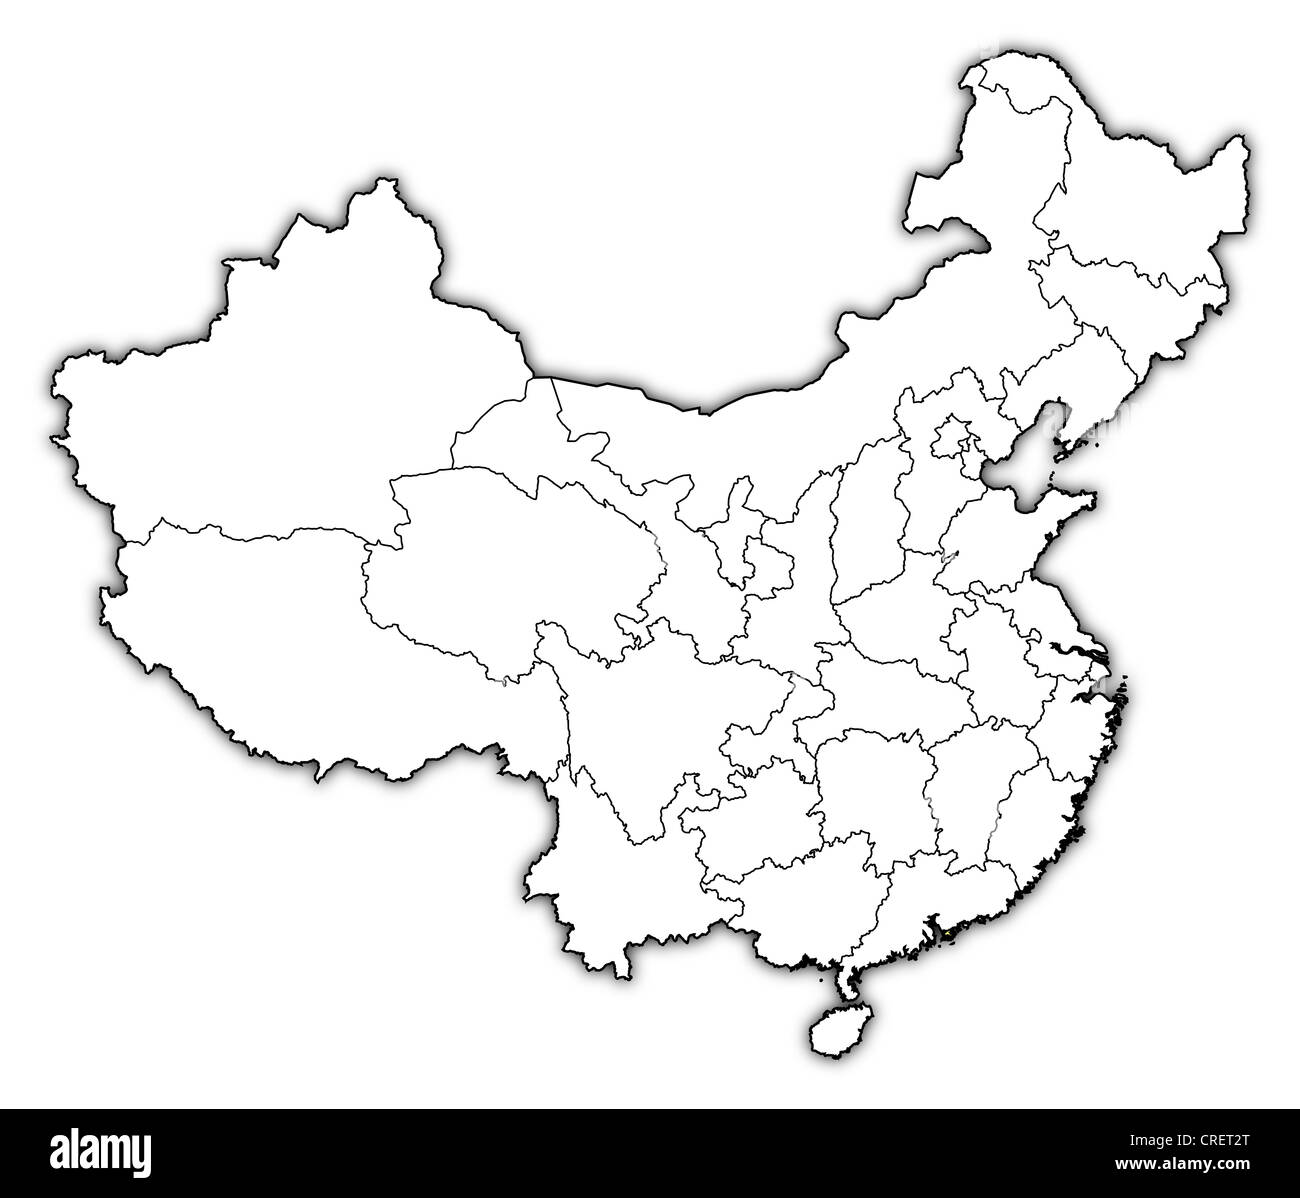 Carte politique de la Chine avec les diverses provinces où Hong Kong est en surbrillance. Banque D'Images